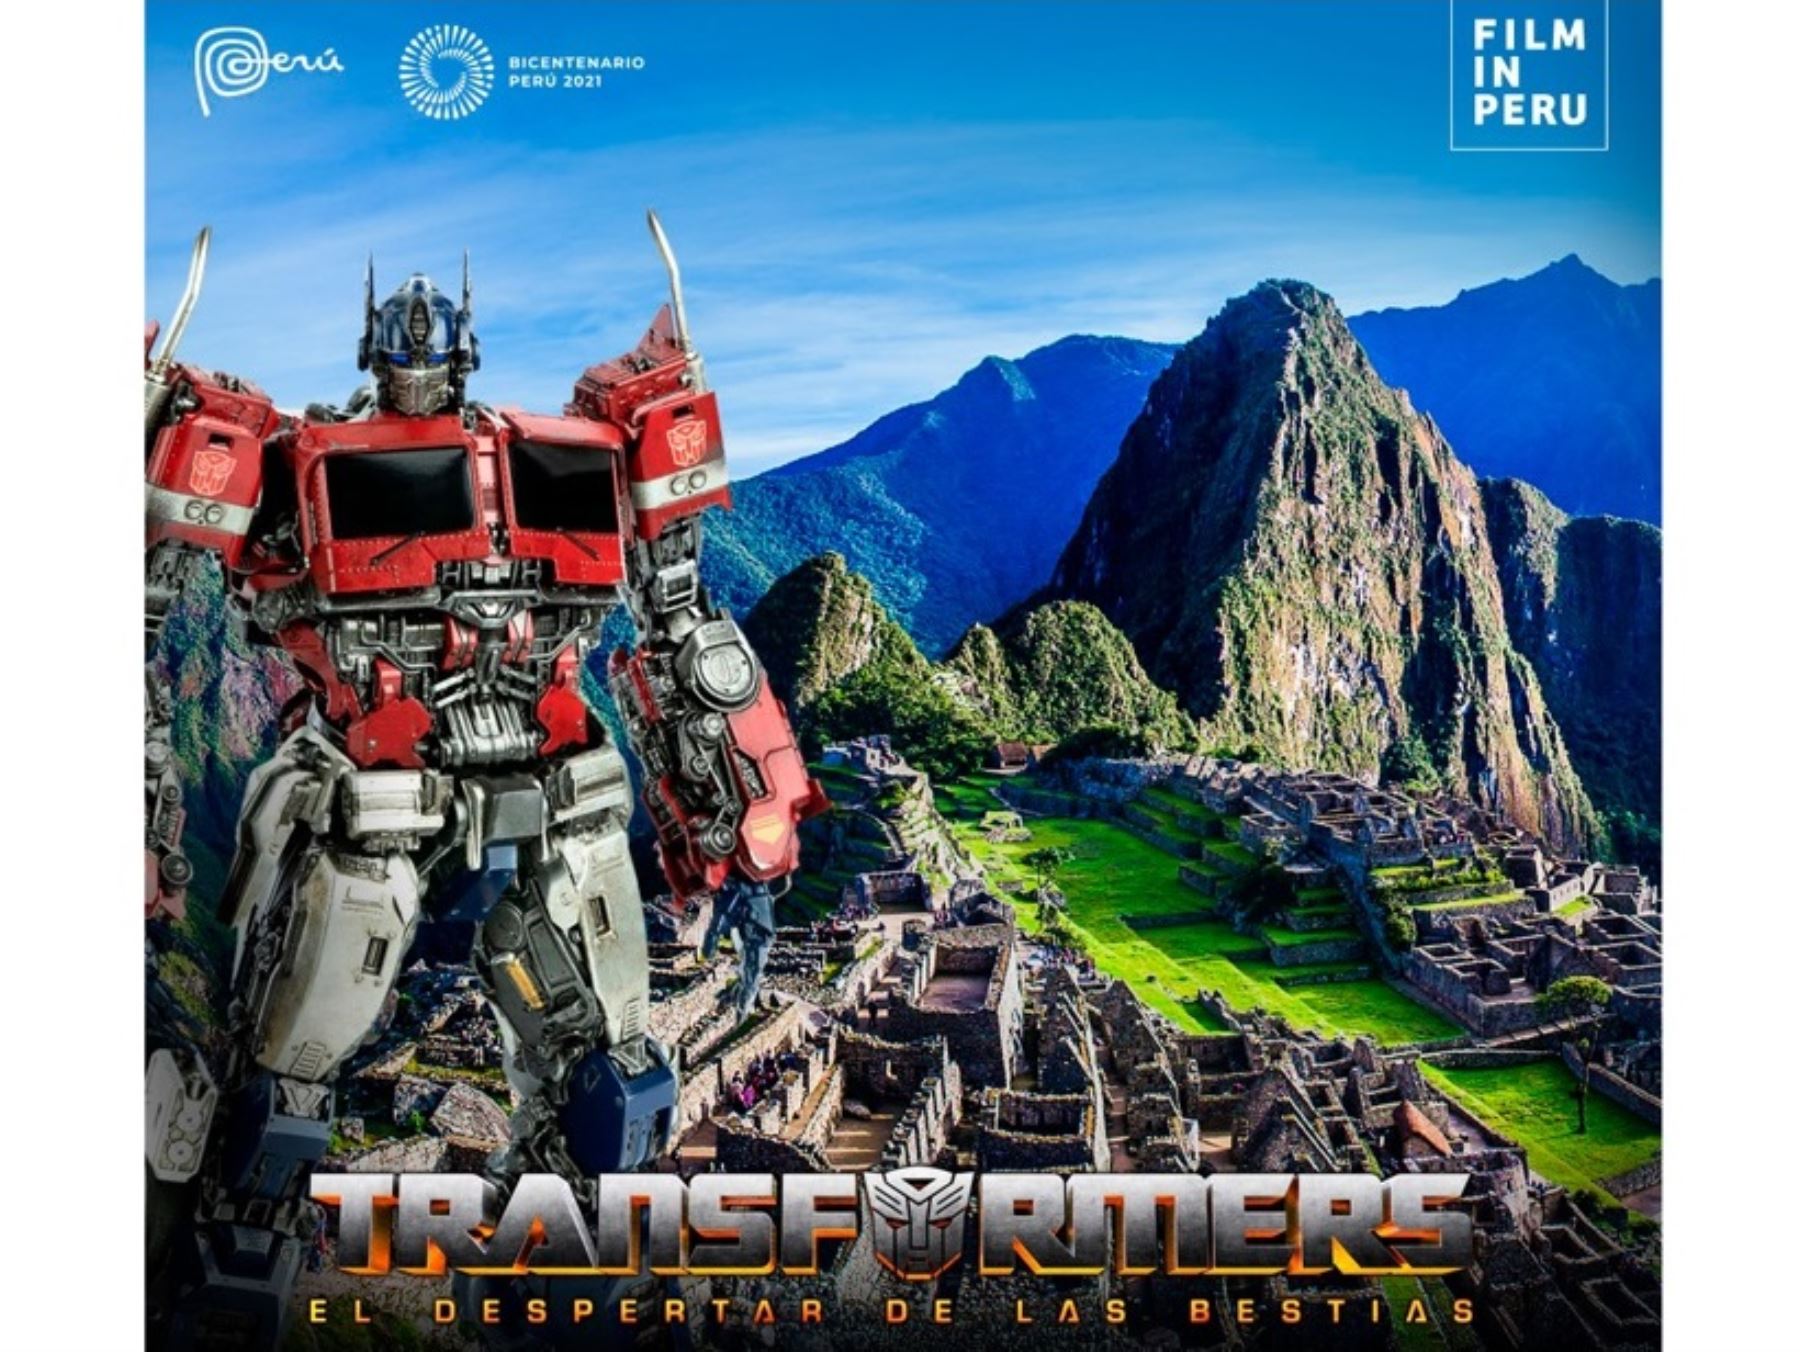 La producción de la película "Transformers: el despertar de las bestias" regresa a Cusco para filmar escenas en el parque arqueológico Sacsayhuamán y en el centro histórico de la Ciudad Imperial.